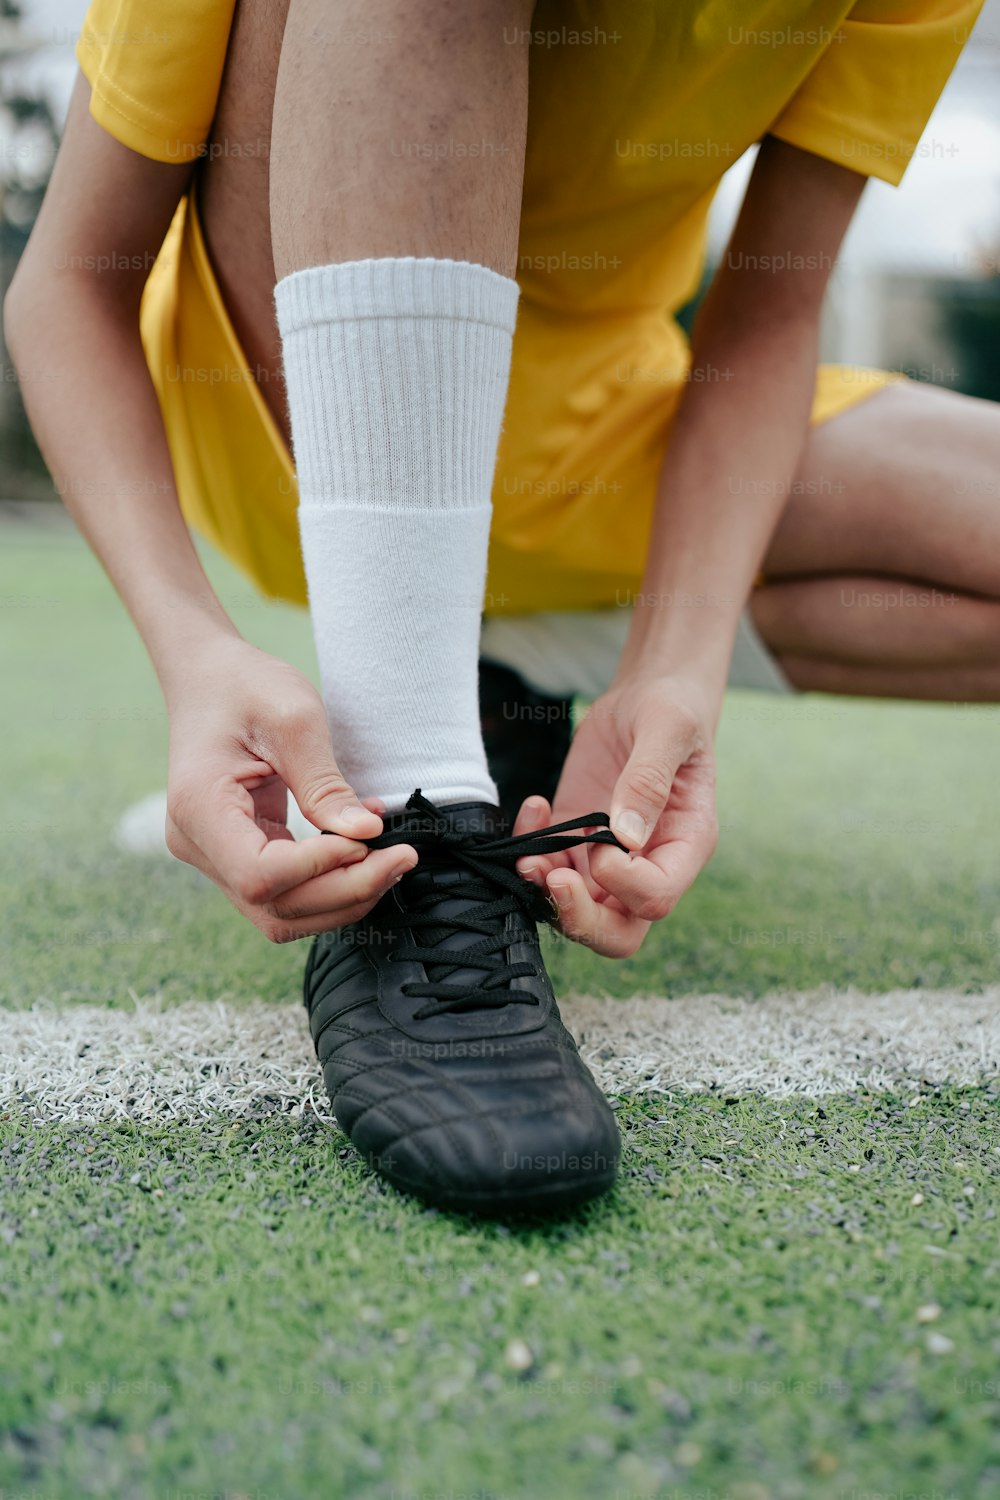 Una persona atando un cordón de zapatos en un campo de fútbol